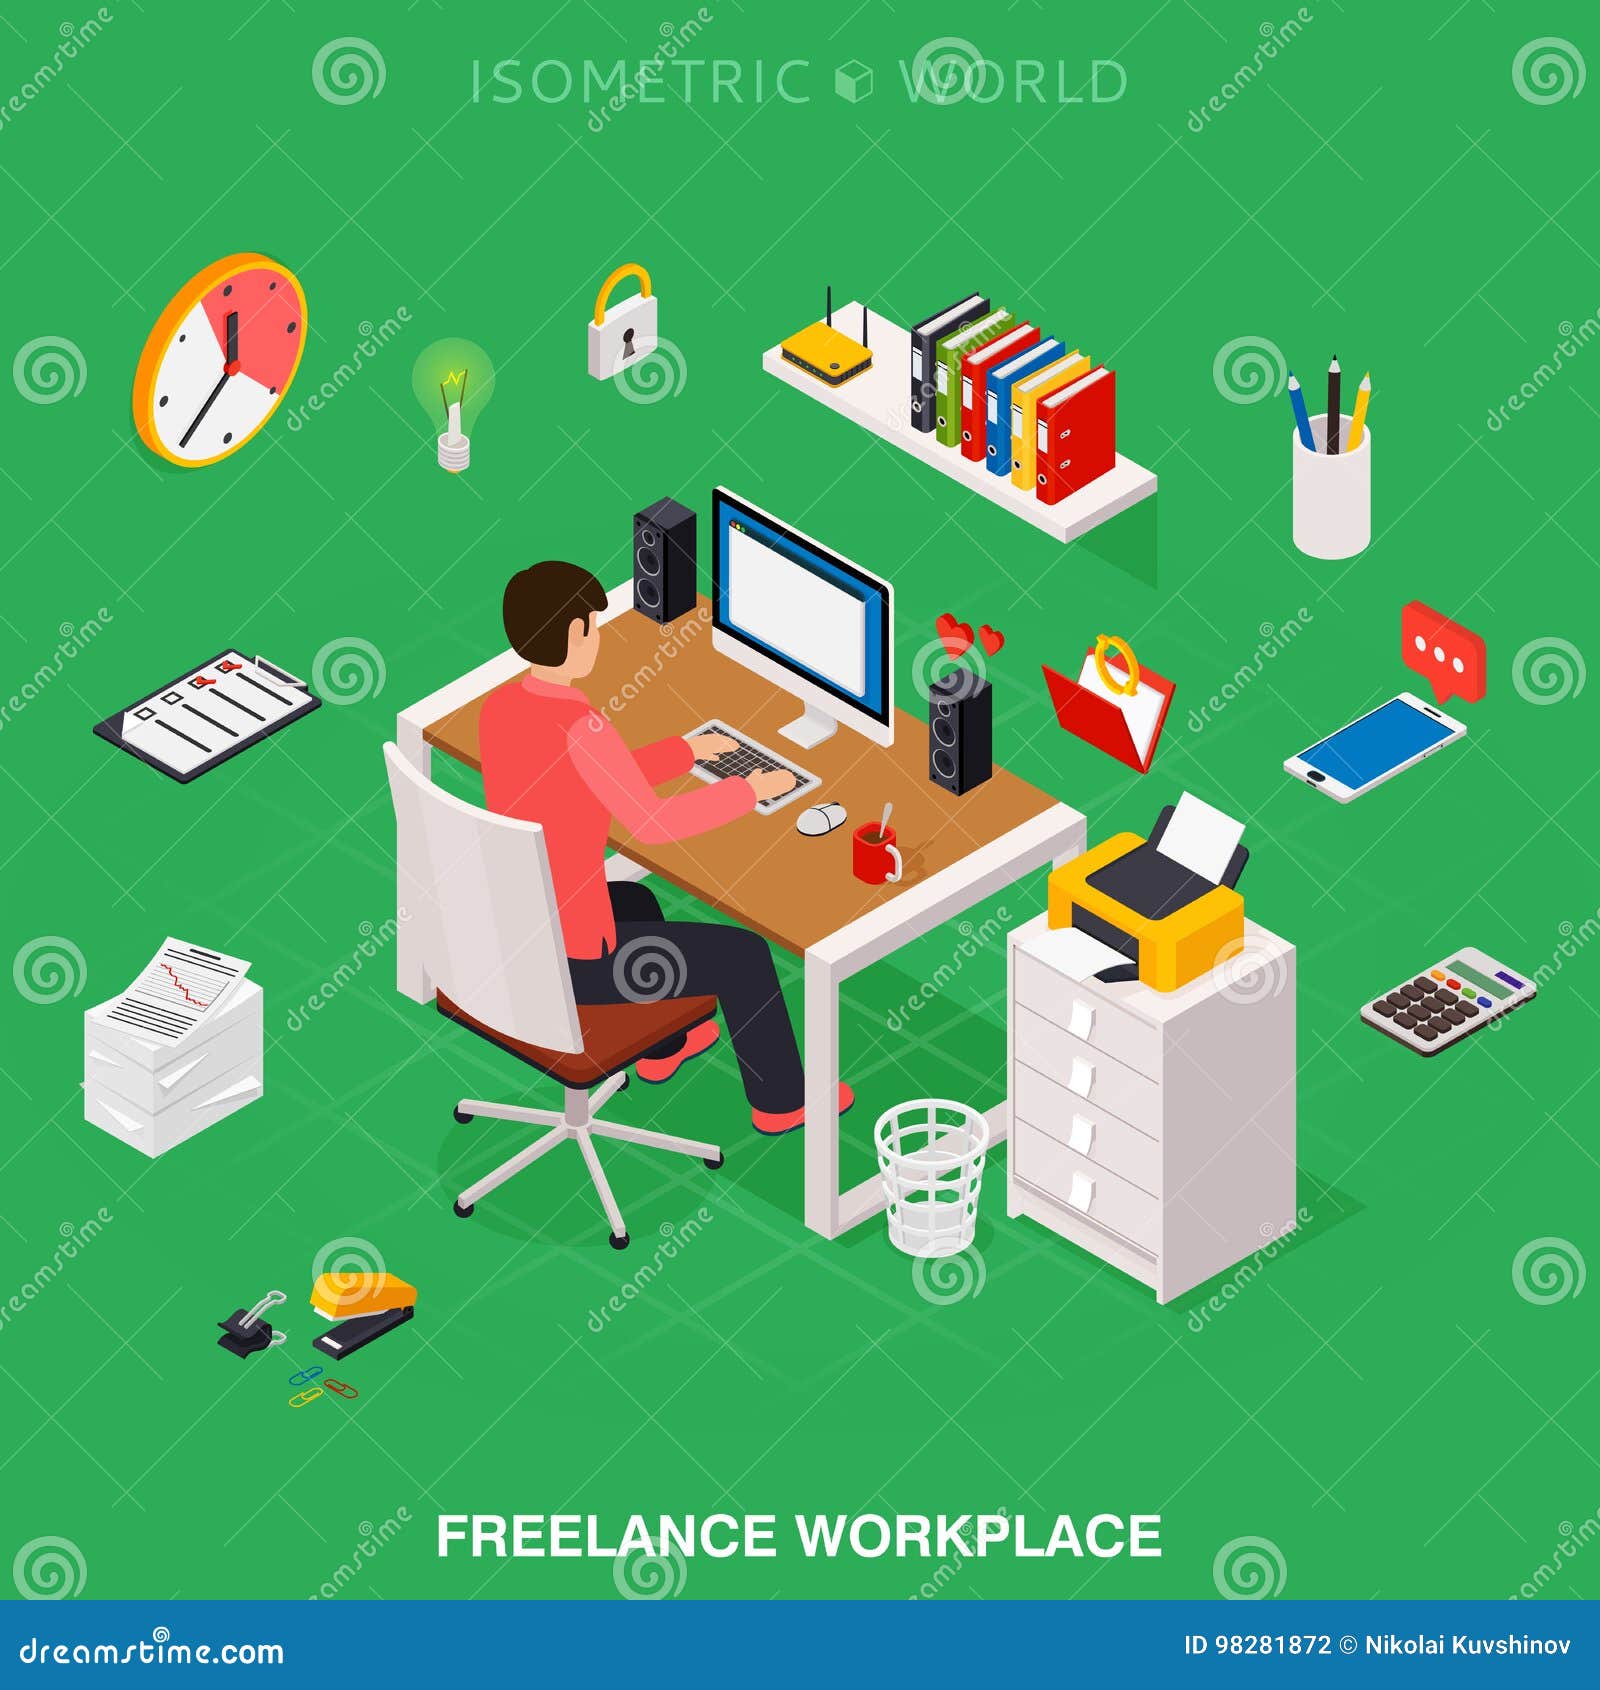 professional freelancer working on desktop computer at desk.